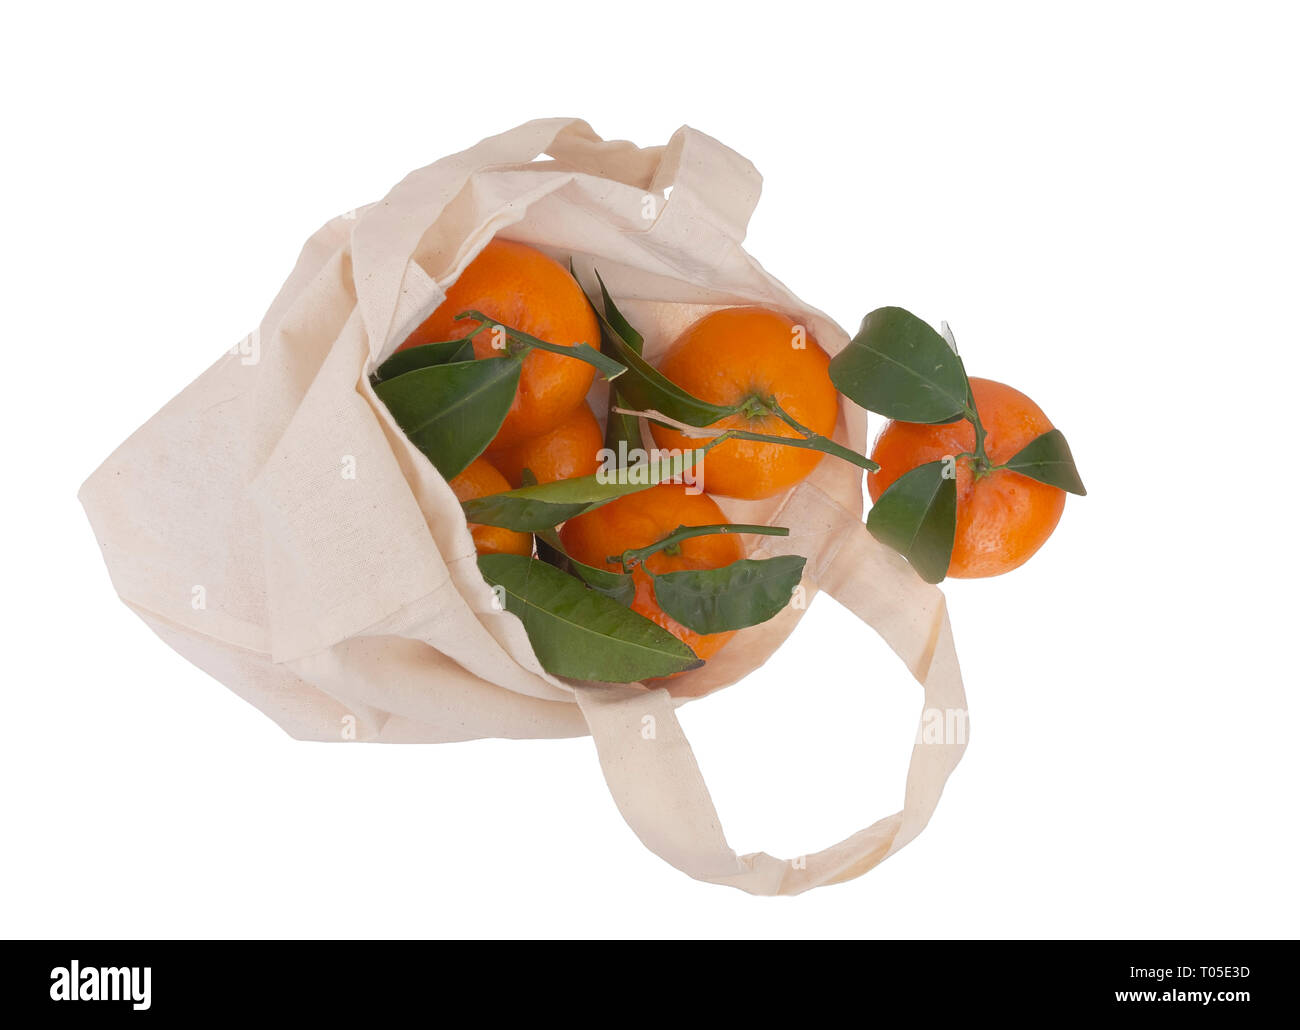 Frisch gepflückt Orangen in wiederverwendbar, recyclingfähig Fabric shopping Tragetasche, isoliert auf Weiss. Für umweltfreundliche, grüne Verbraucher. Stockfoto